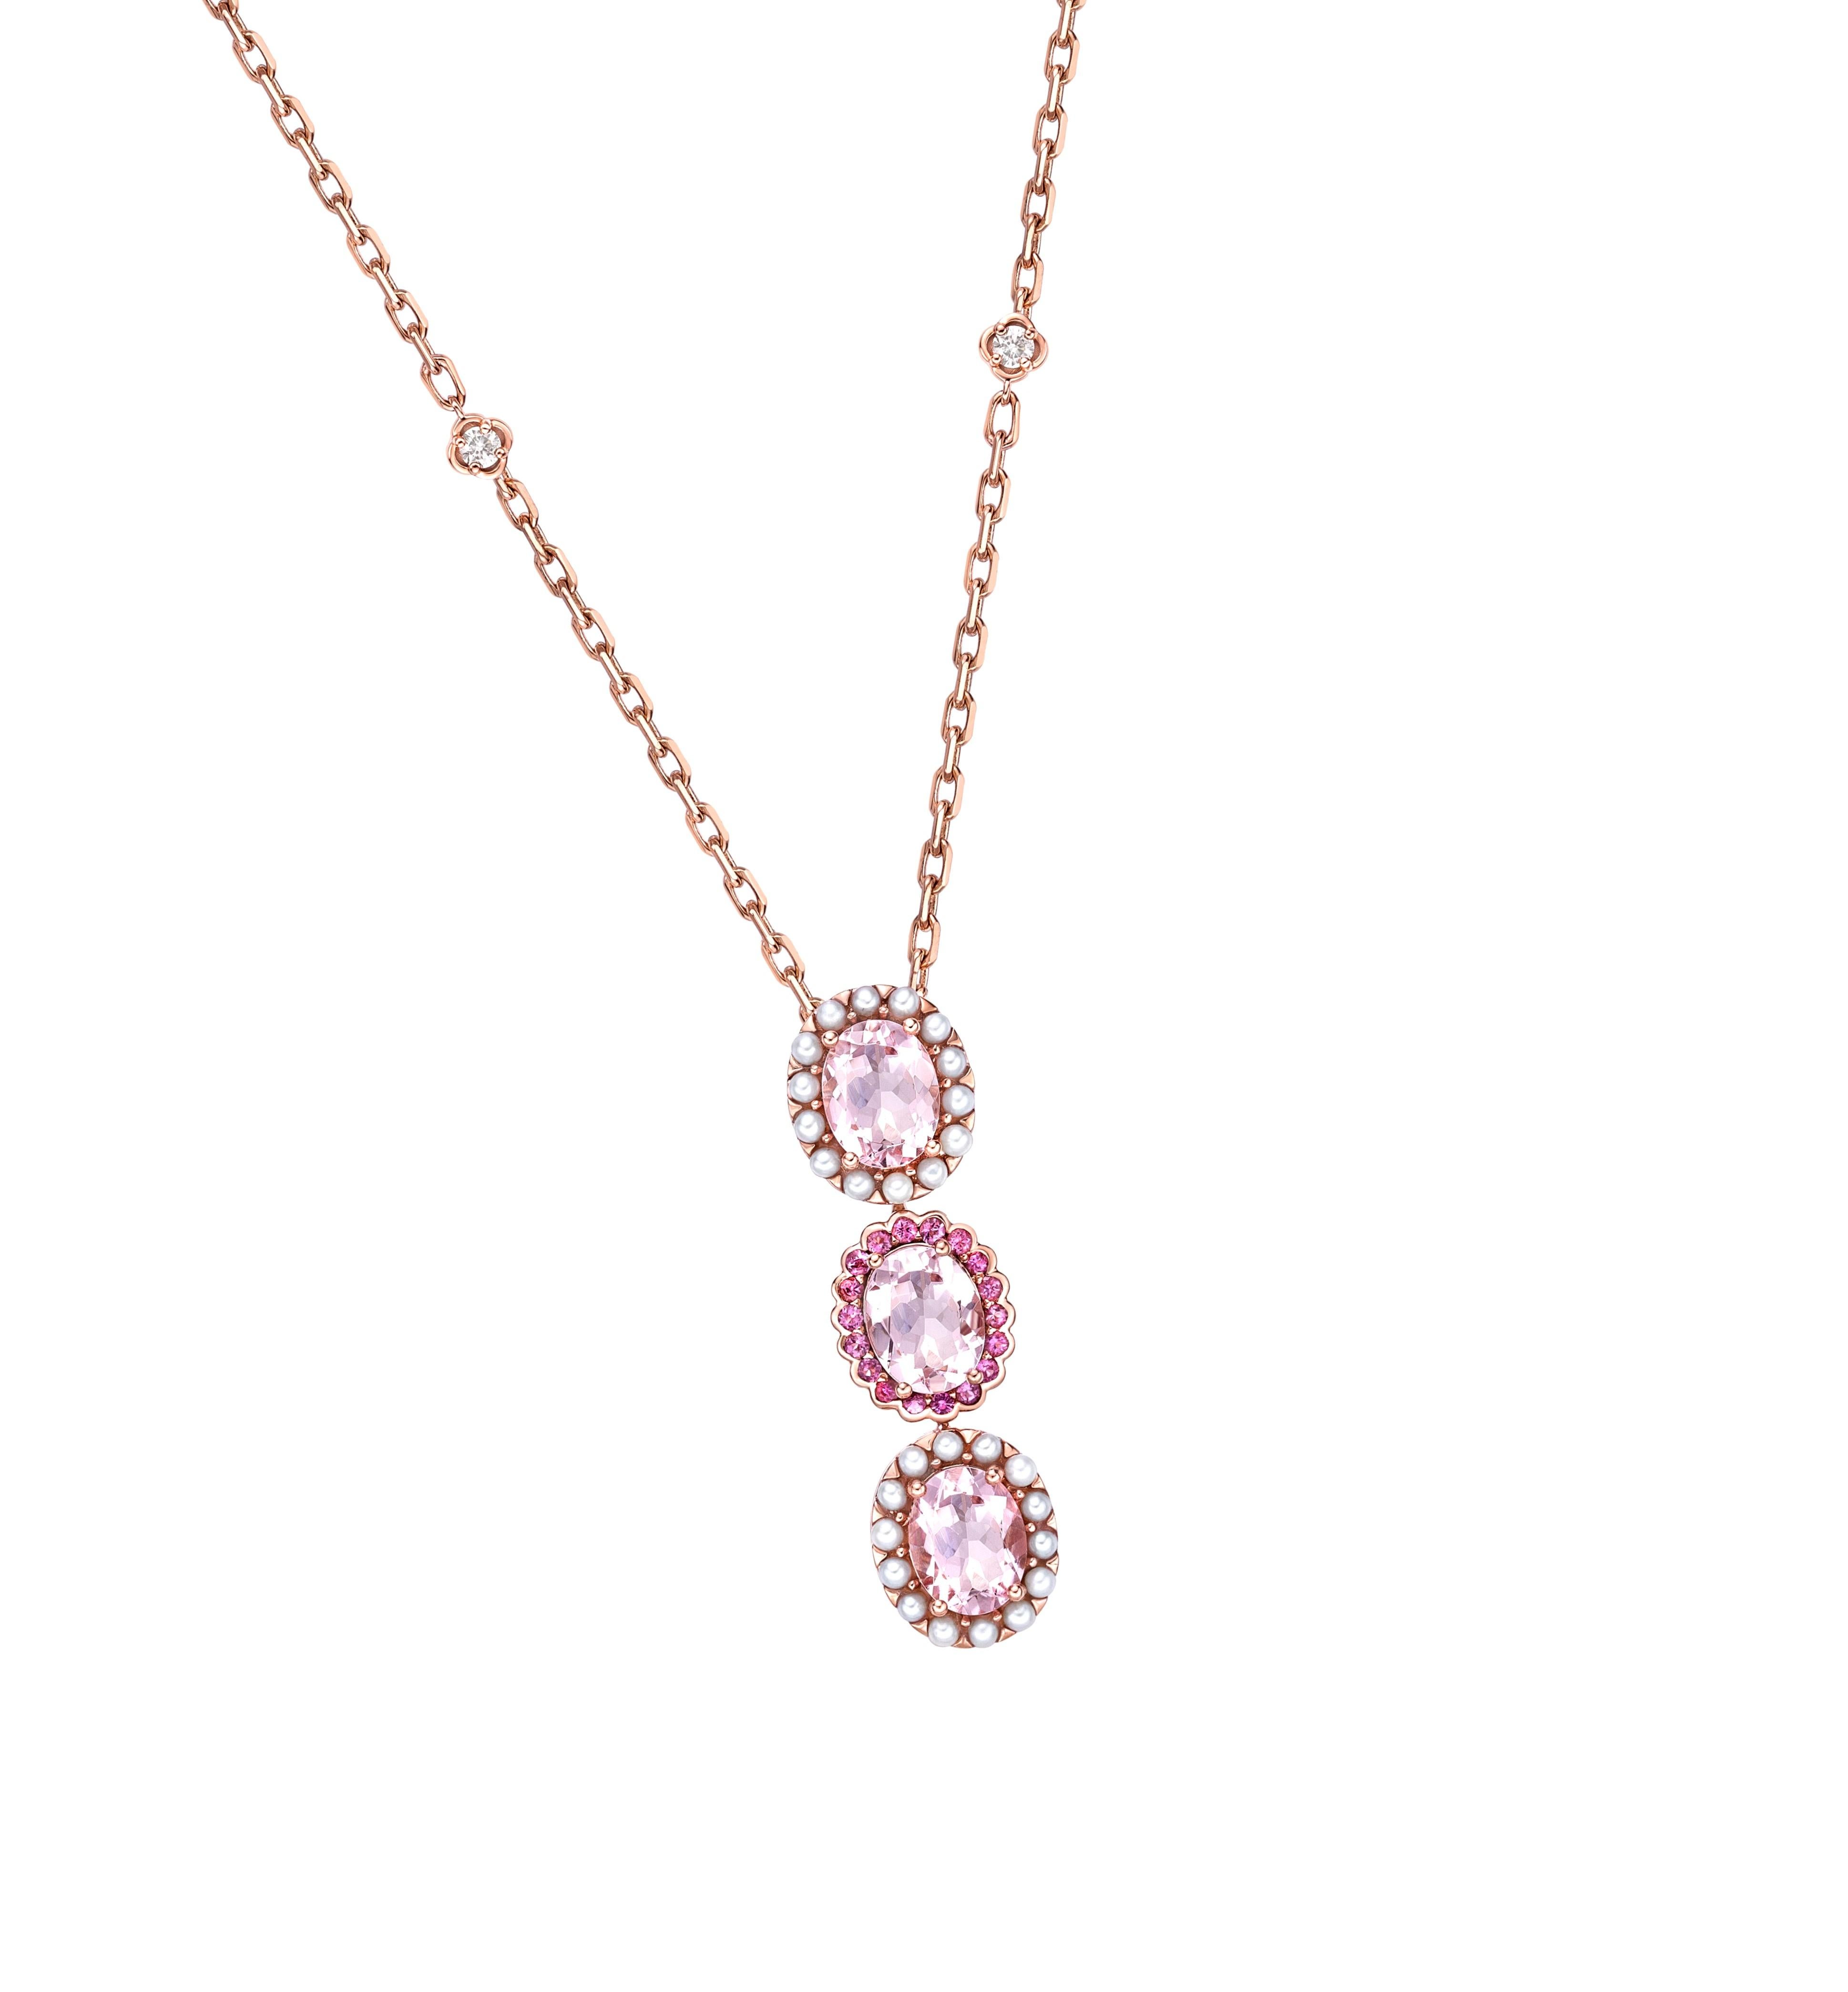 Unsere Cherry Blossom-Kollektion verbindet diese hübschen rosa Morganite auf einzigartige Weise mit einer Kombination aus Perlen, rosa Turmalinen und Diamanten. Diese Collection'S ist in Roségold gefasst und passt elegant und stilvoll zu jedem Look.